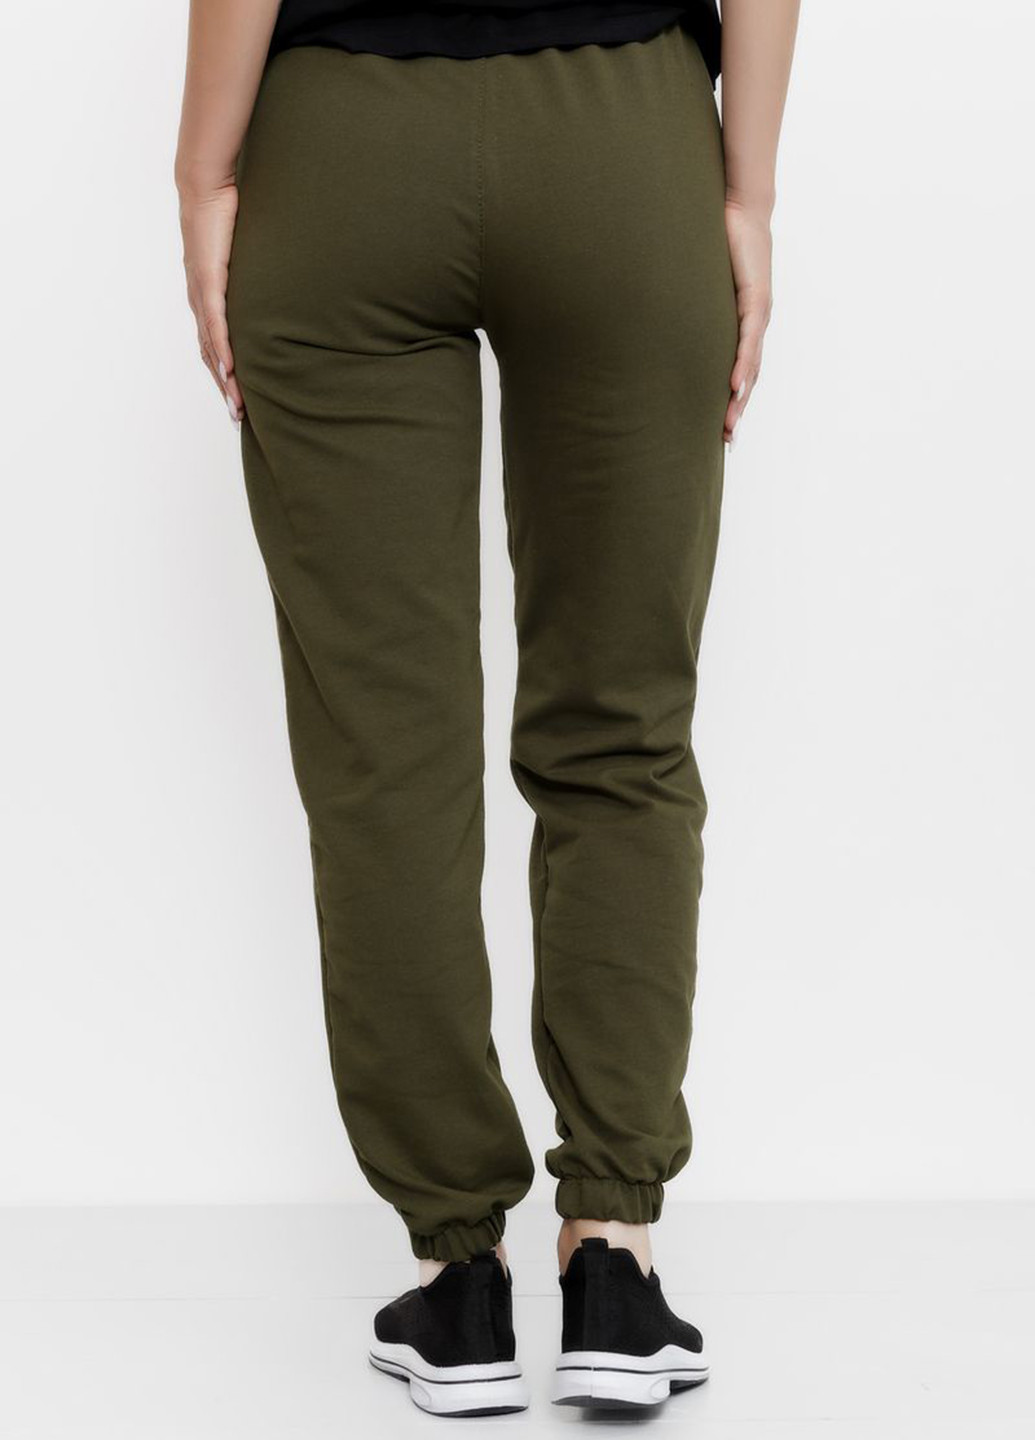 Темно-зеленые спортивные демисезонные джоггеры брюки Ager